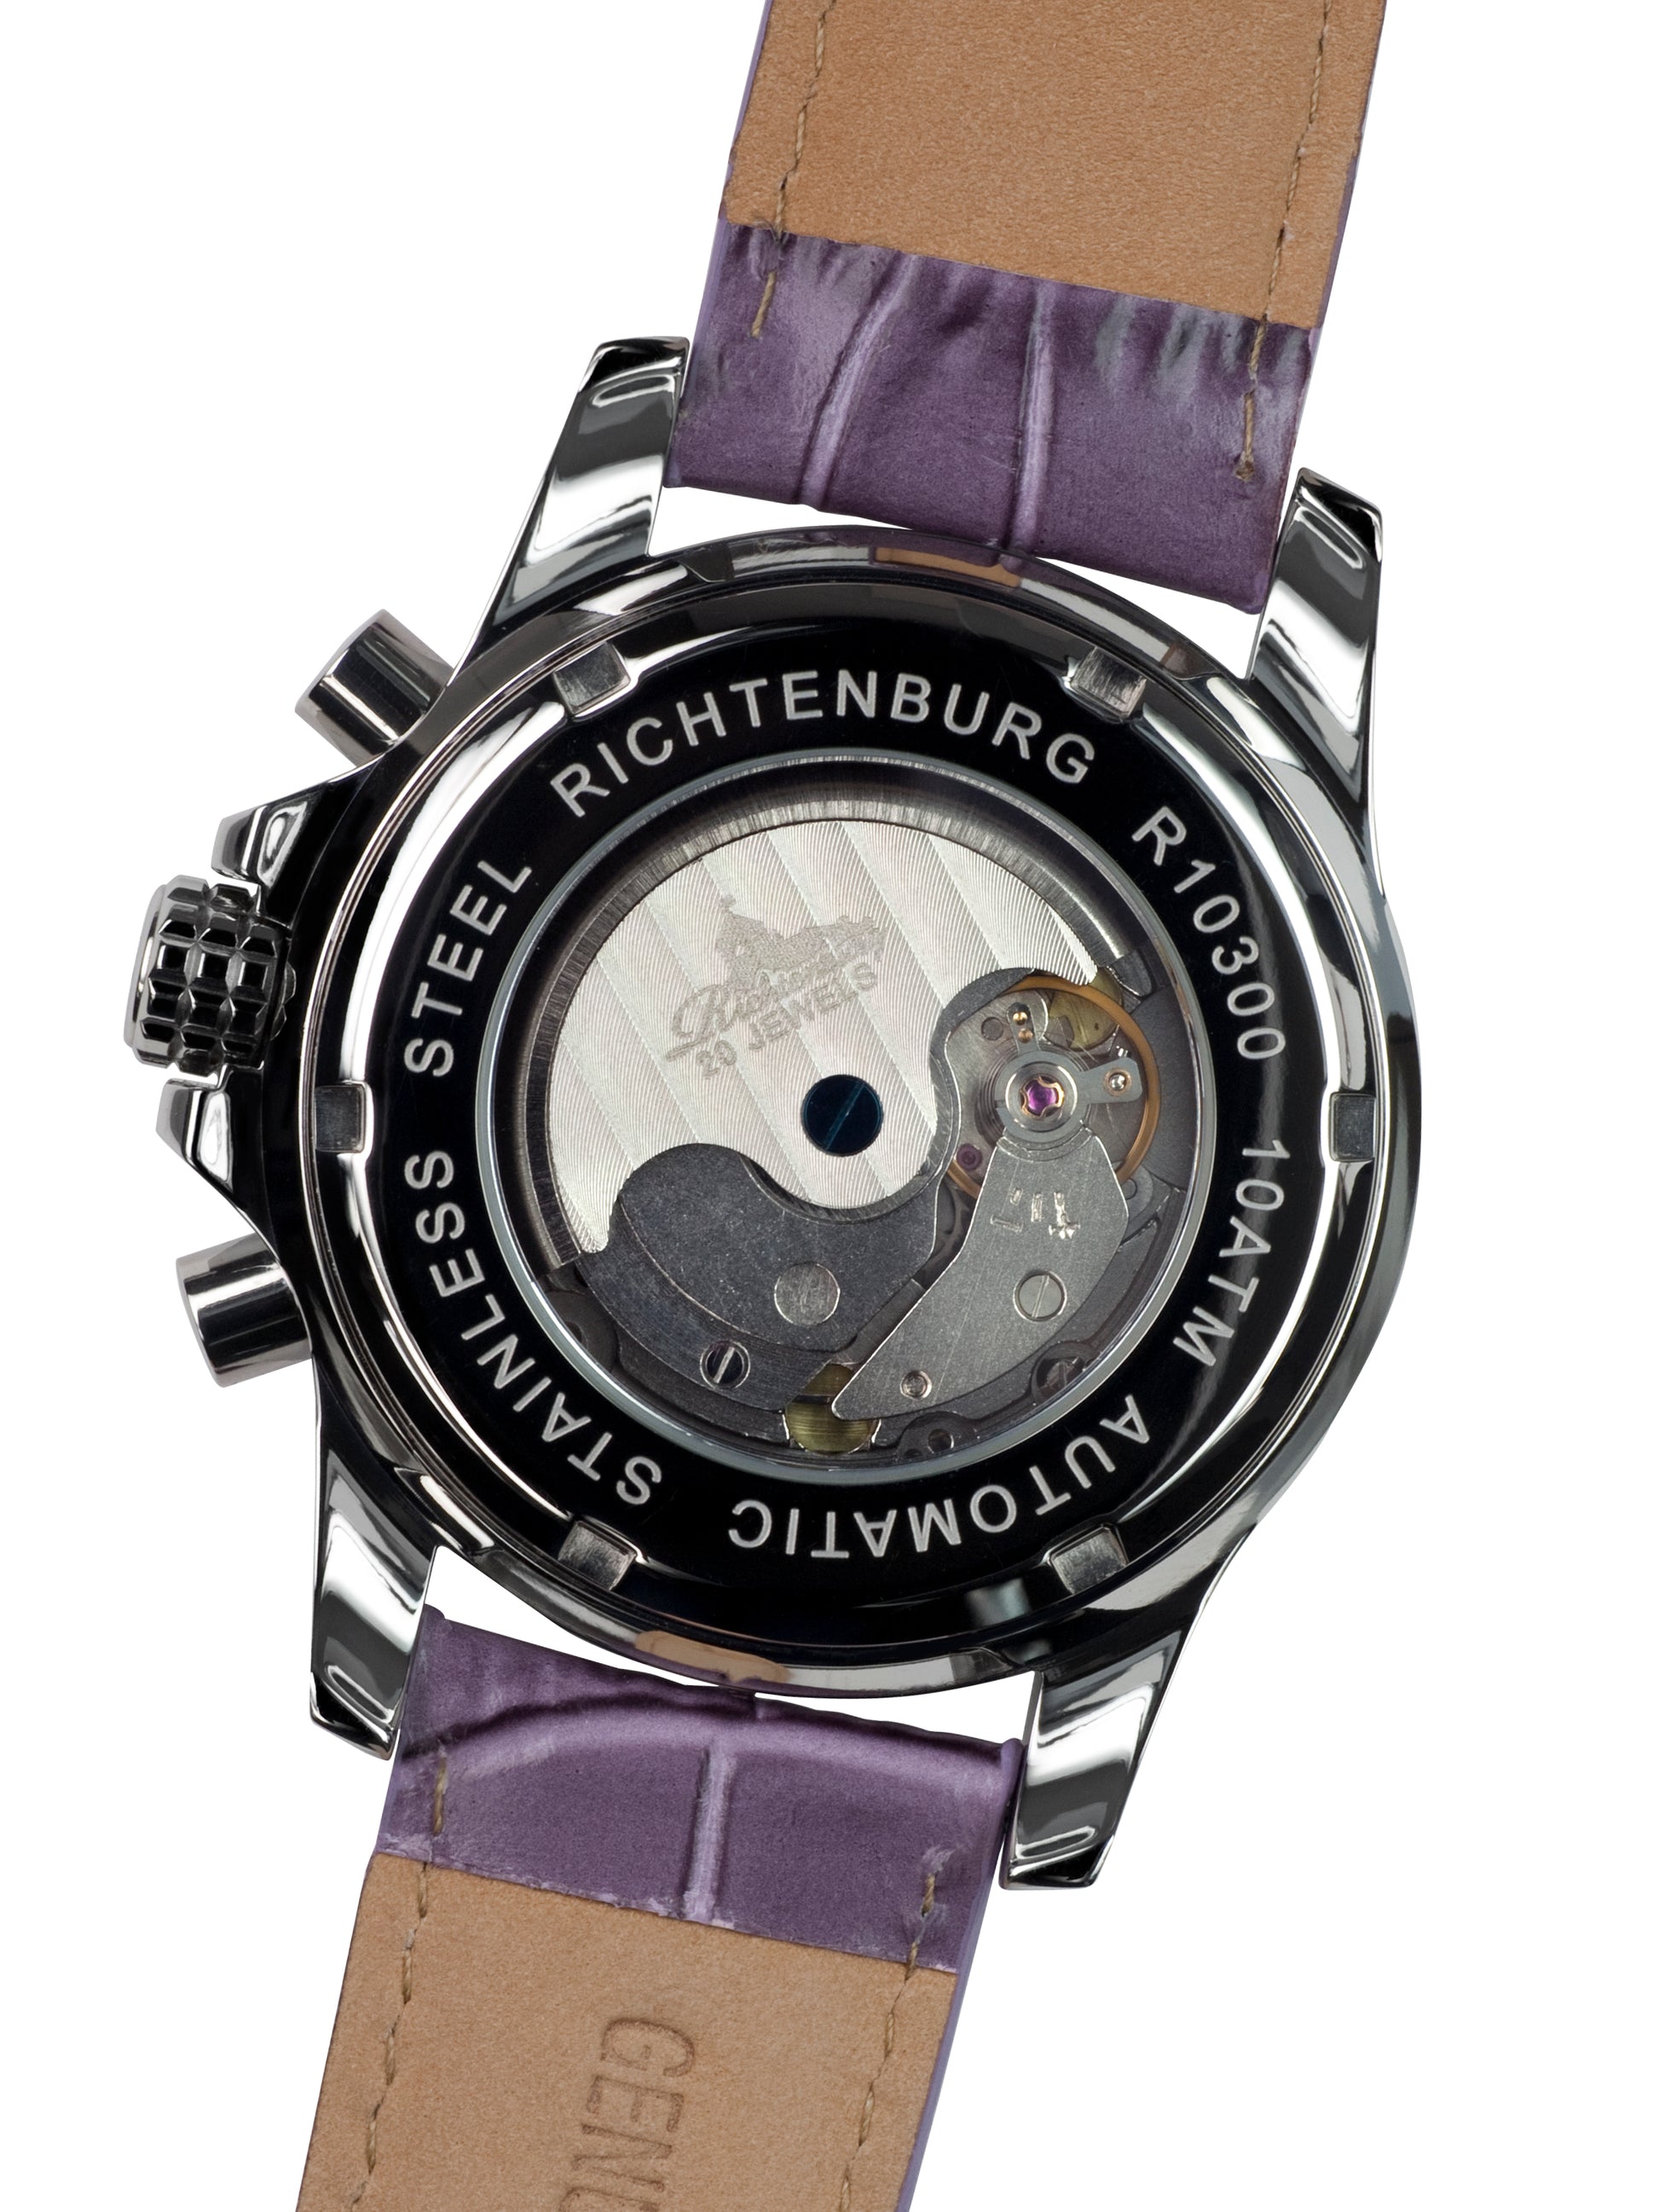 Automatic watches — Romantica — Richtenburg — violet